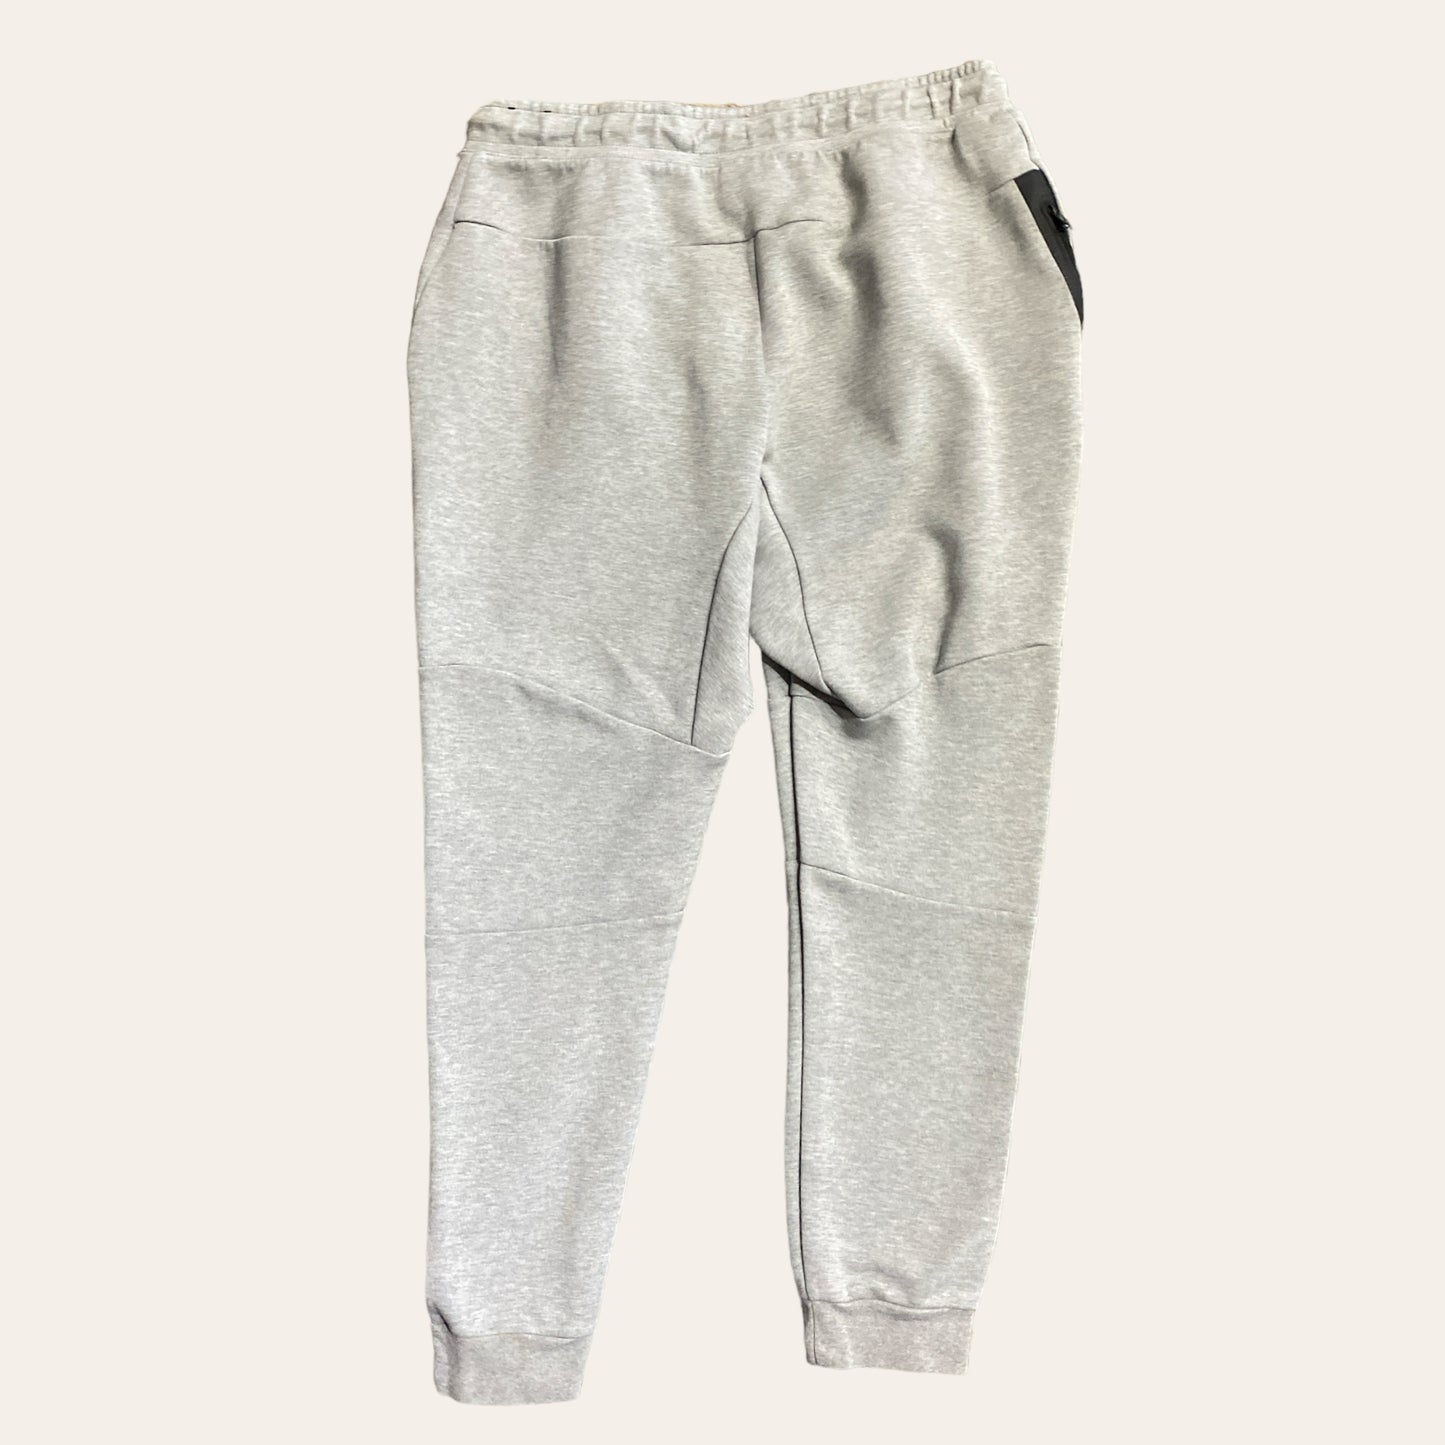 Nike Tech Sweatpants Grey Size XL